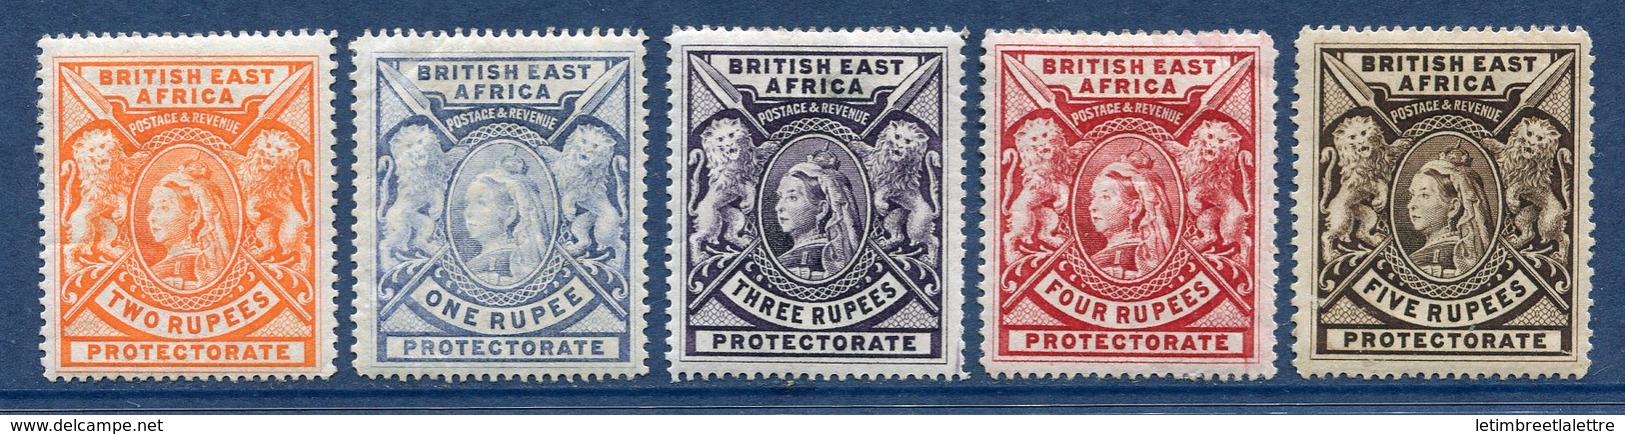 ⭐ Afrique Orientale Britannique - YT N° 76 à 80 * - Neuf Avec Charnière ⭐ - Brits Oost-Afrika